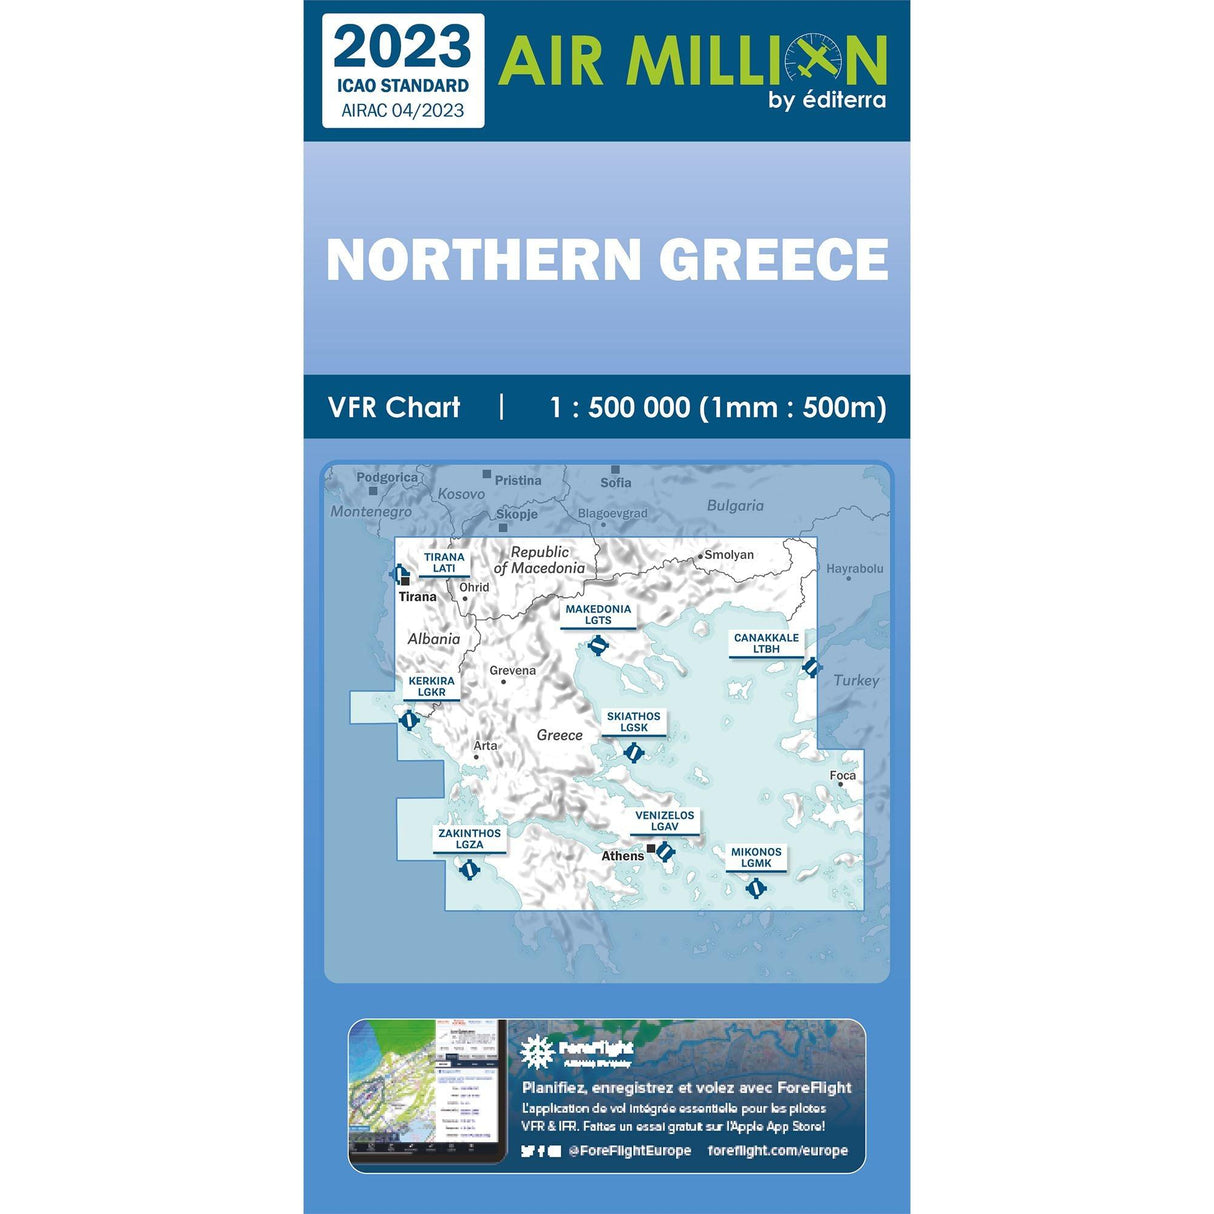 CARTE AIR MILLION GRECE BALKANS NORD 2023 (1/500 000) Cartes Air Million Editerra